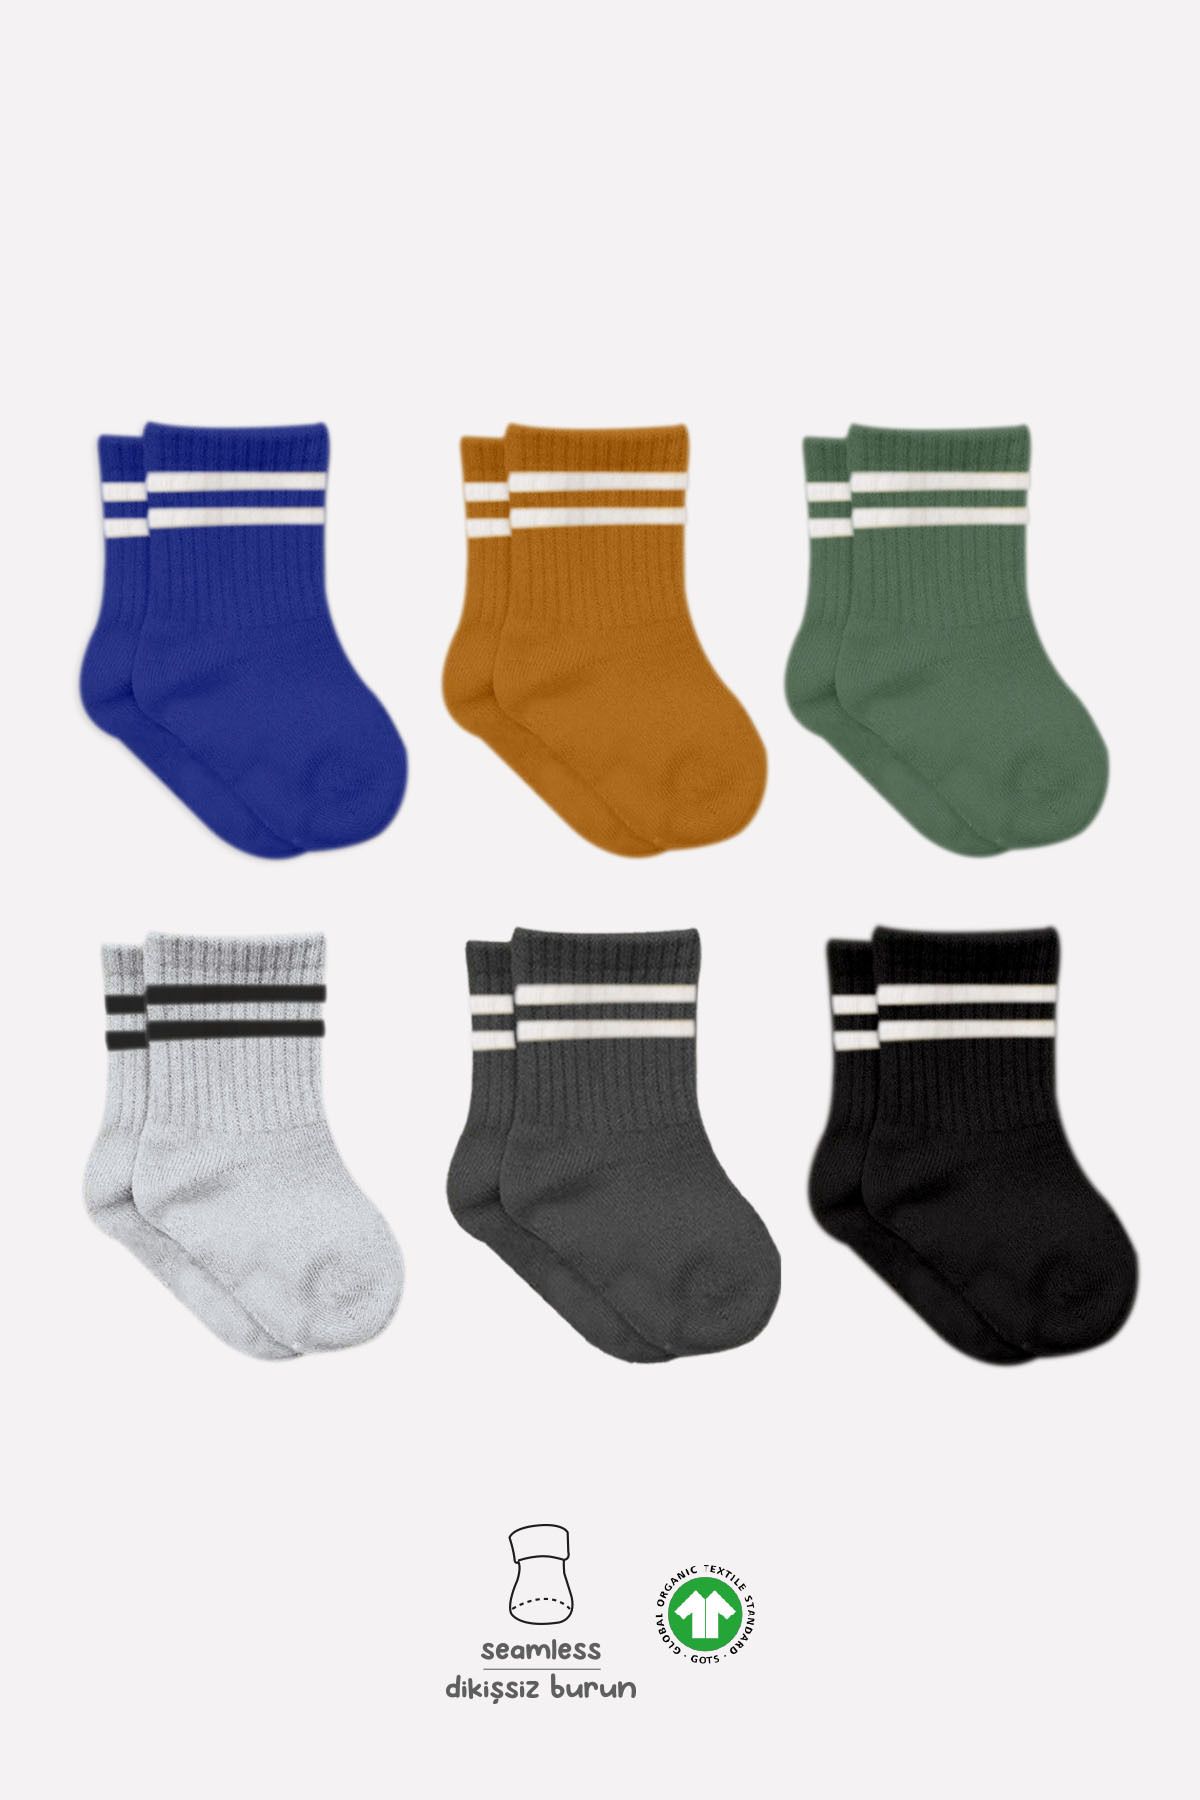 Bistyle 6lı Penye Çemberli Soket Çorap Bs6003 Haki